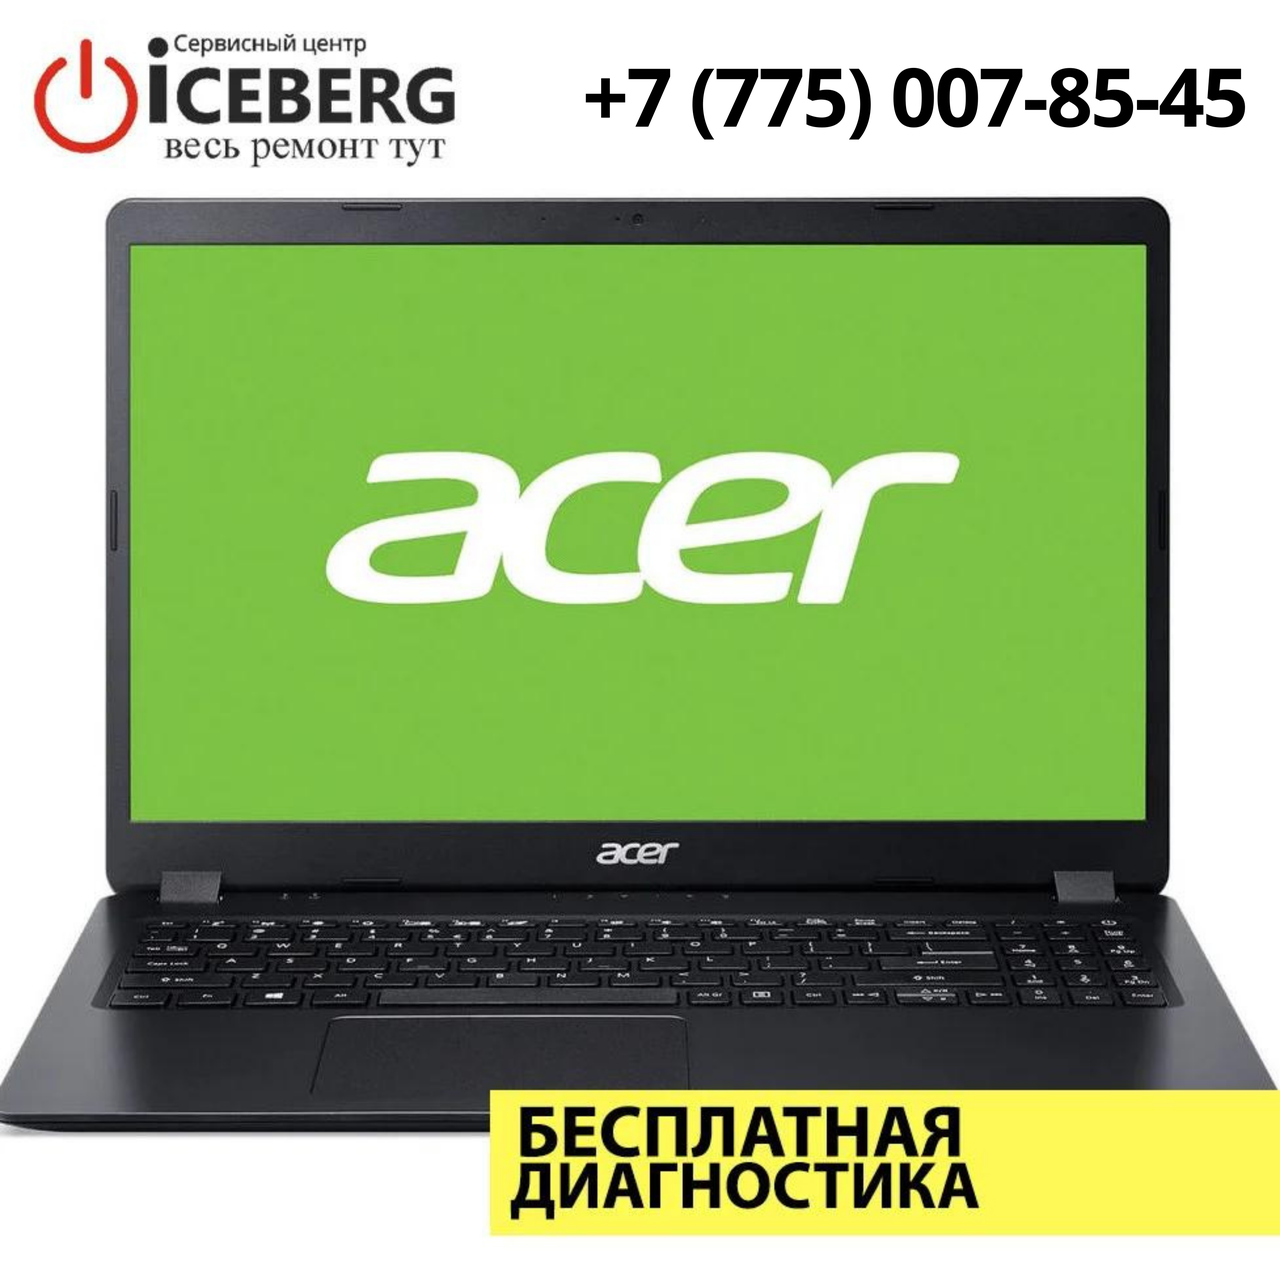 Ремонт ноутбуков и компьютеров Acer в Алматы